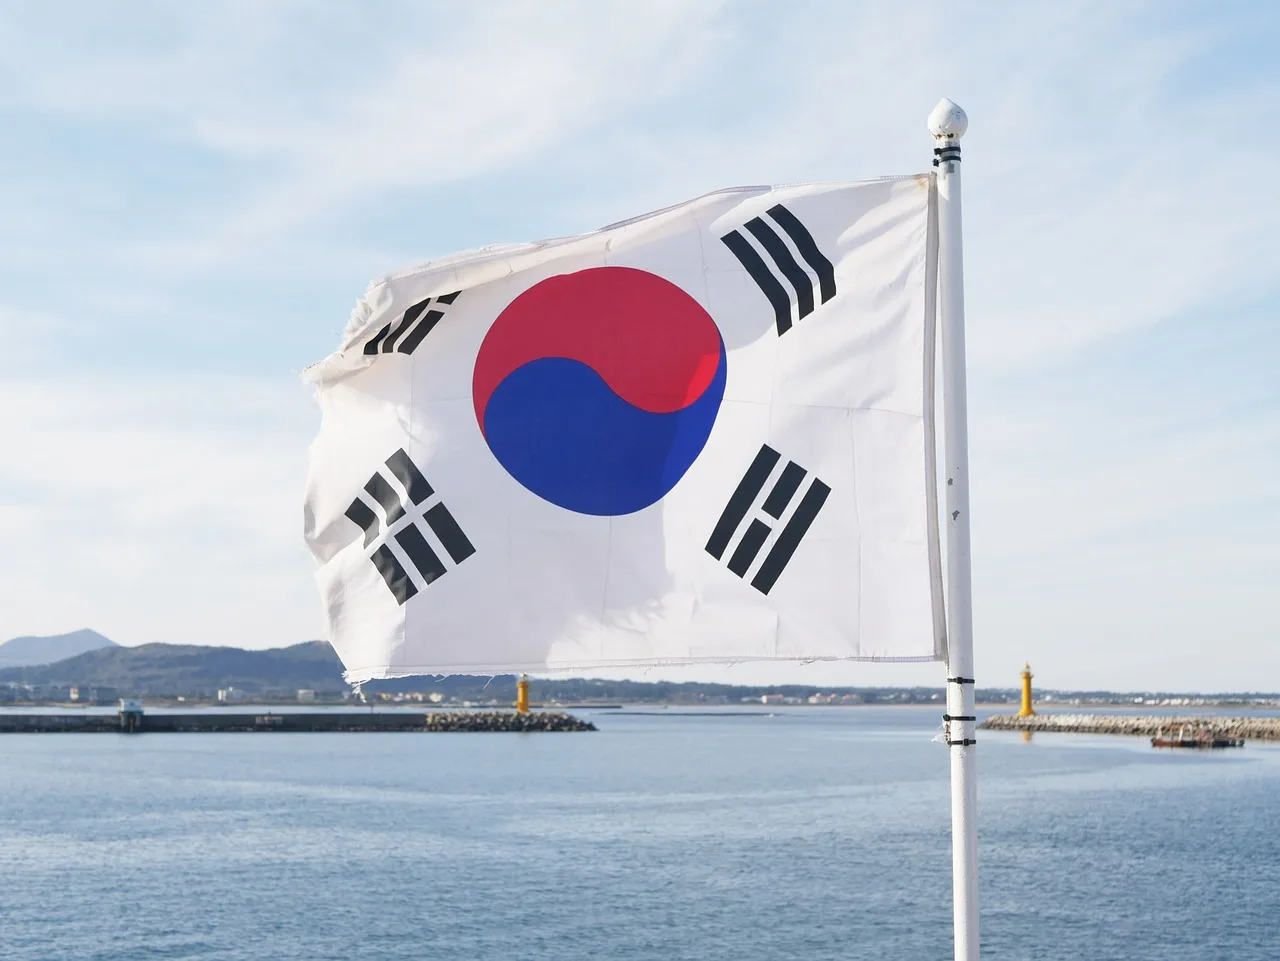 南韓的湯匙意識 重視菁英的社會